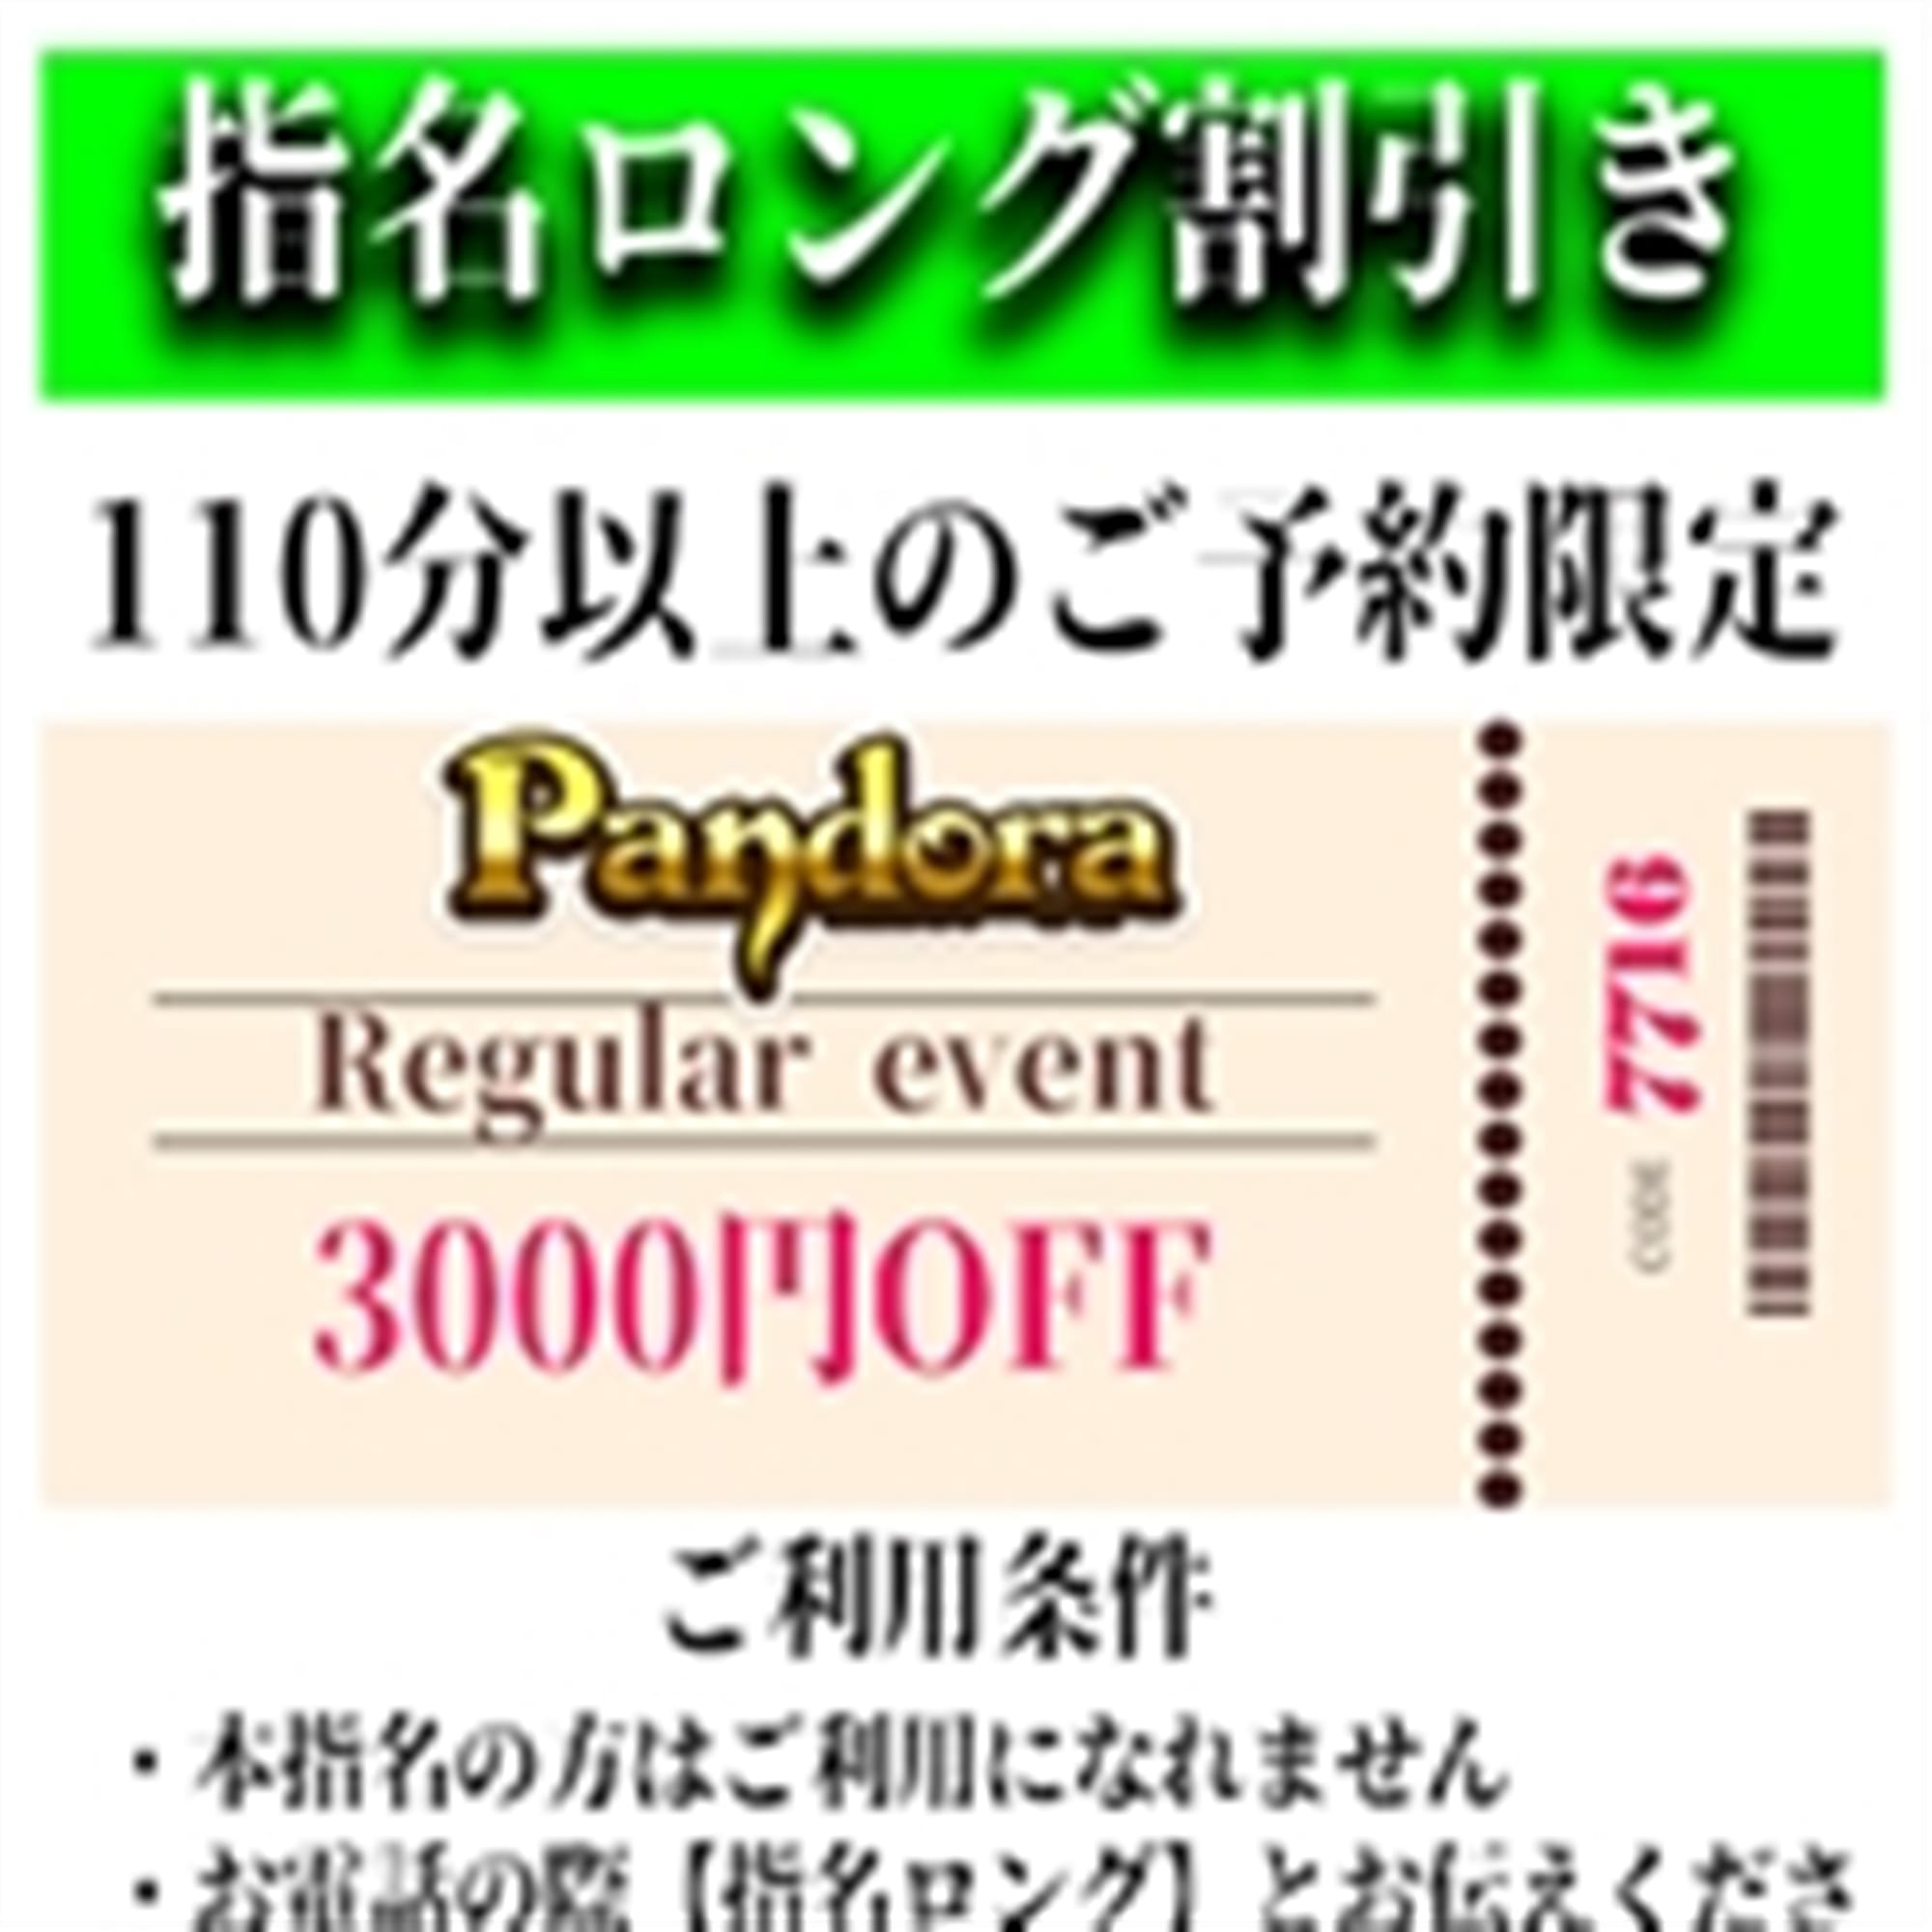 「ご指名のお客様も遊べるロングコース割引」04/25(木) 21:04 | Pandora(パンドラ)新潟のお得なニュース